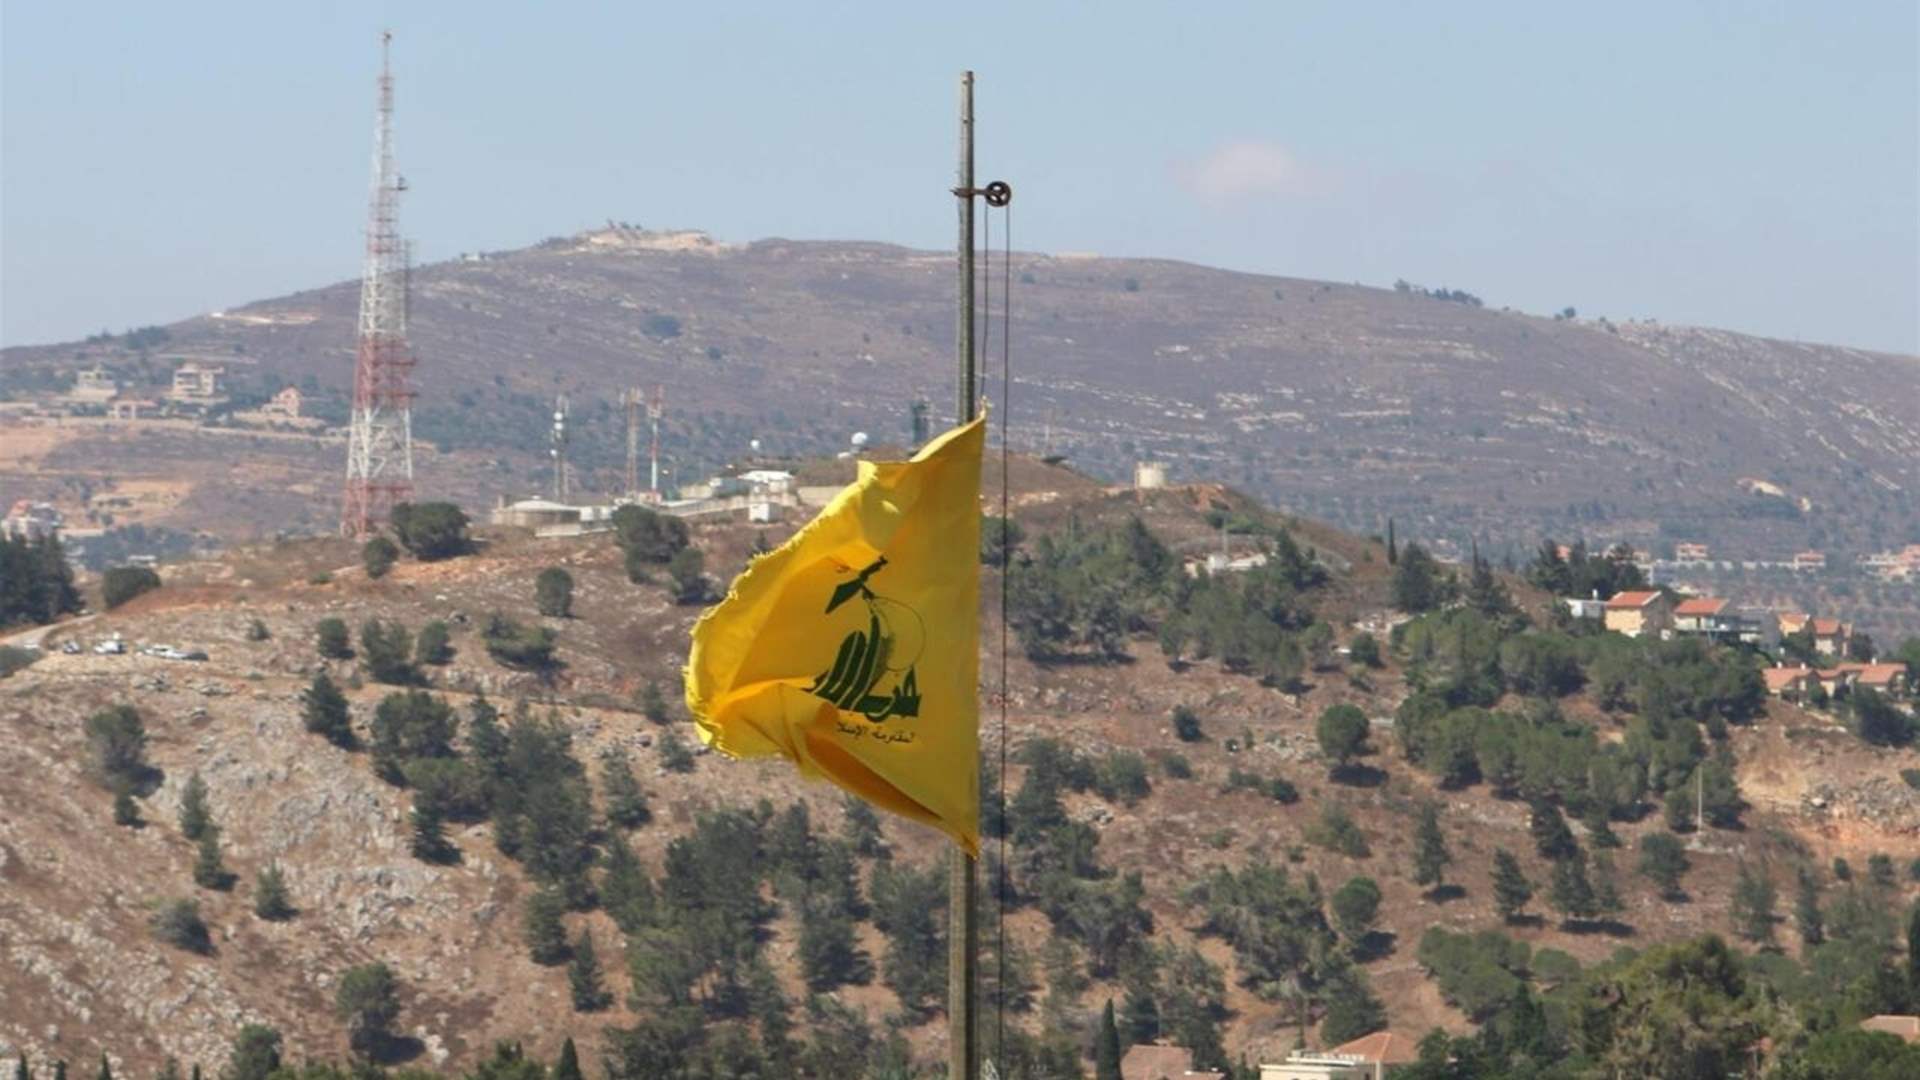 Retaliation in kind: Hezbollah&#39;s &#39;strategic&#39; response to Israeli attacks